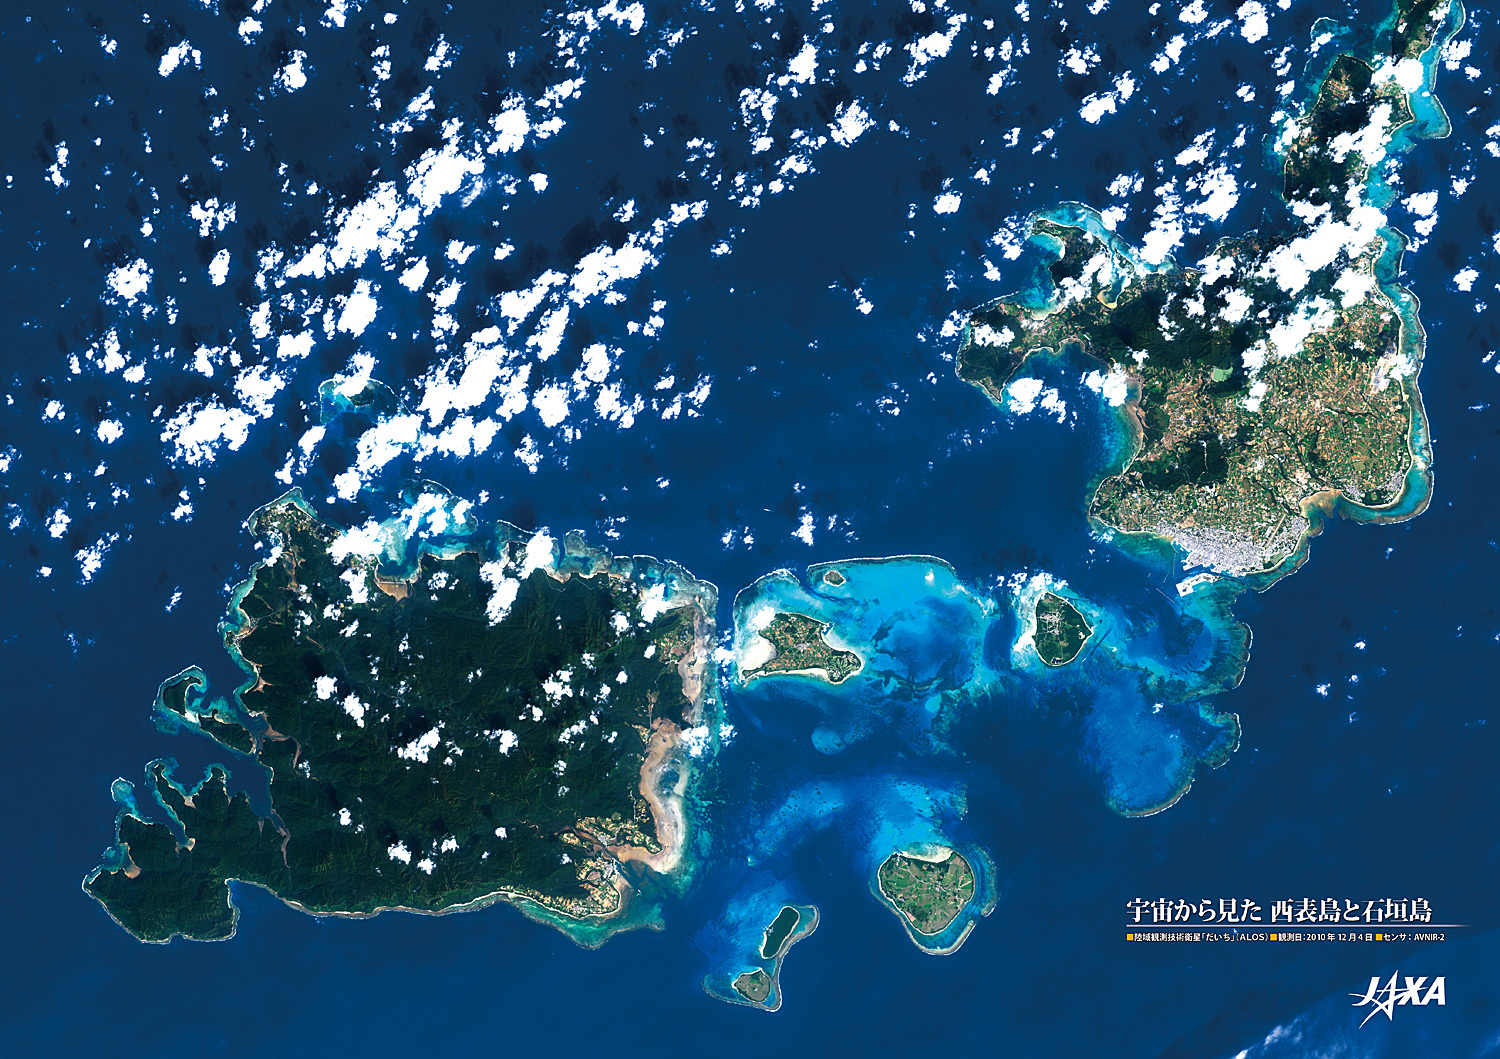 だいちから見た日本の都市 西表島と石垣島と島々 :衛星画像（ポスター仕上げ）